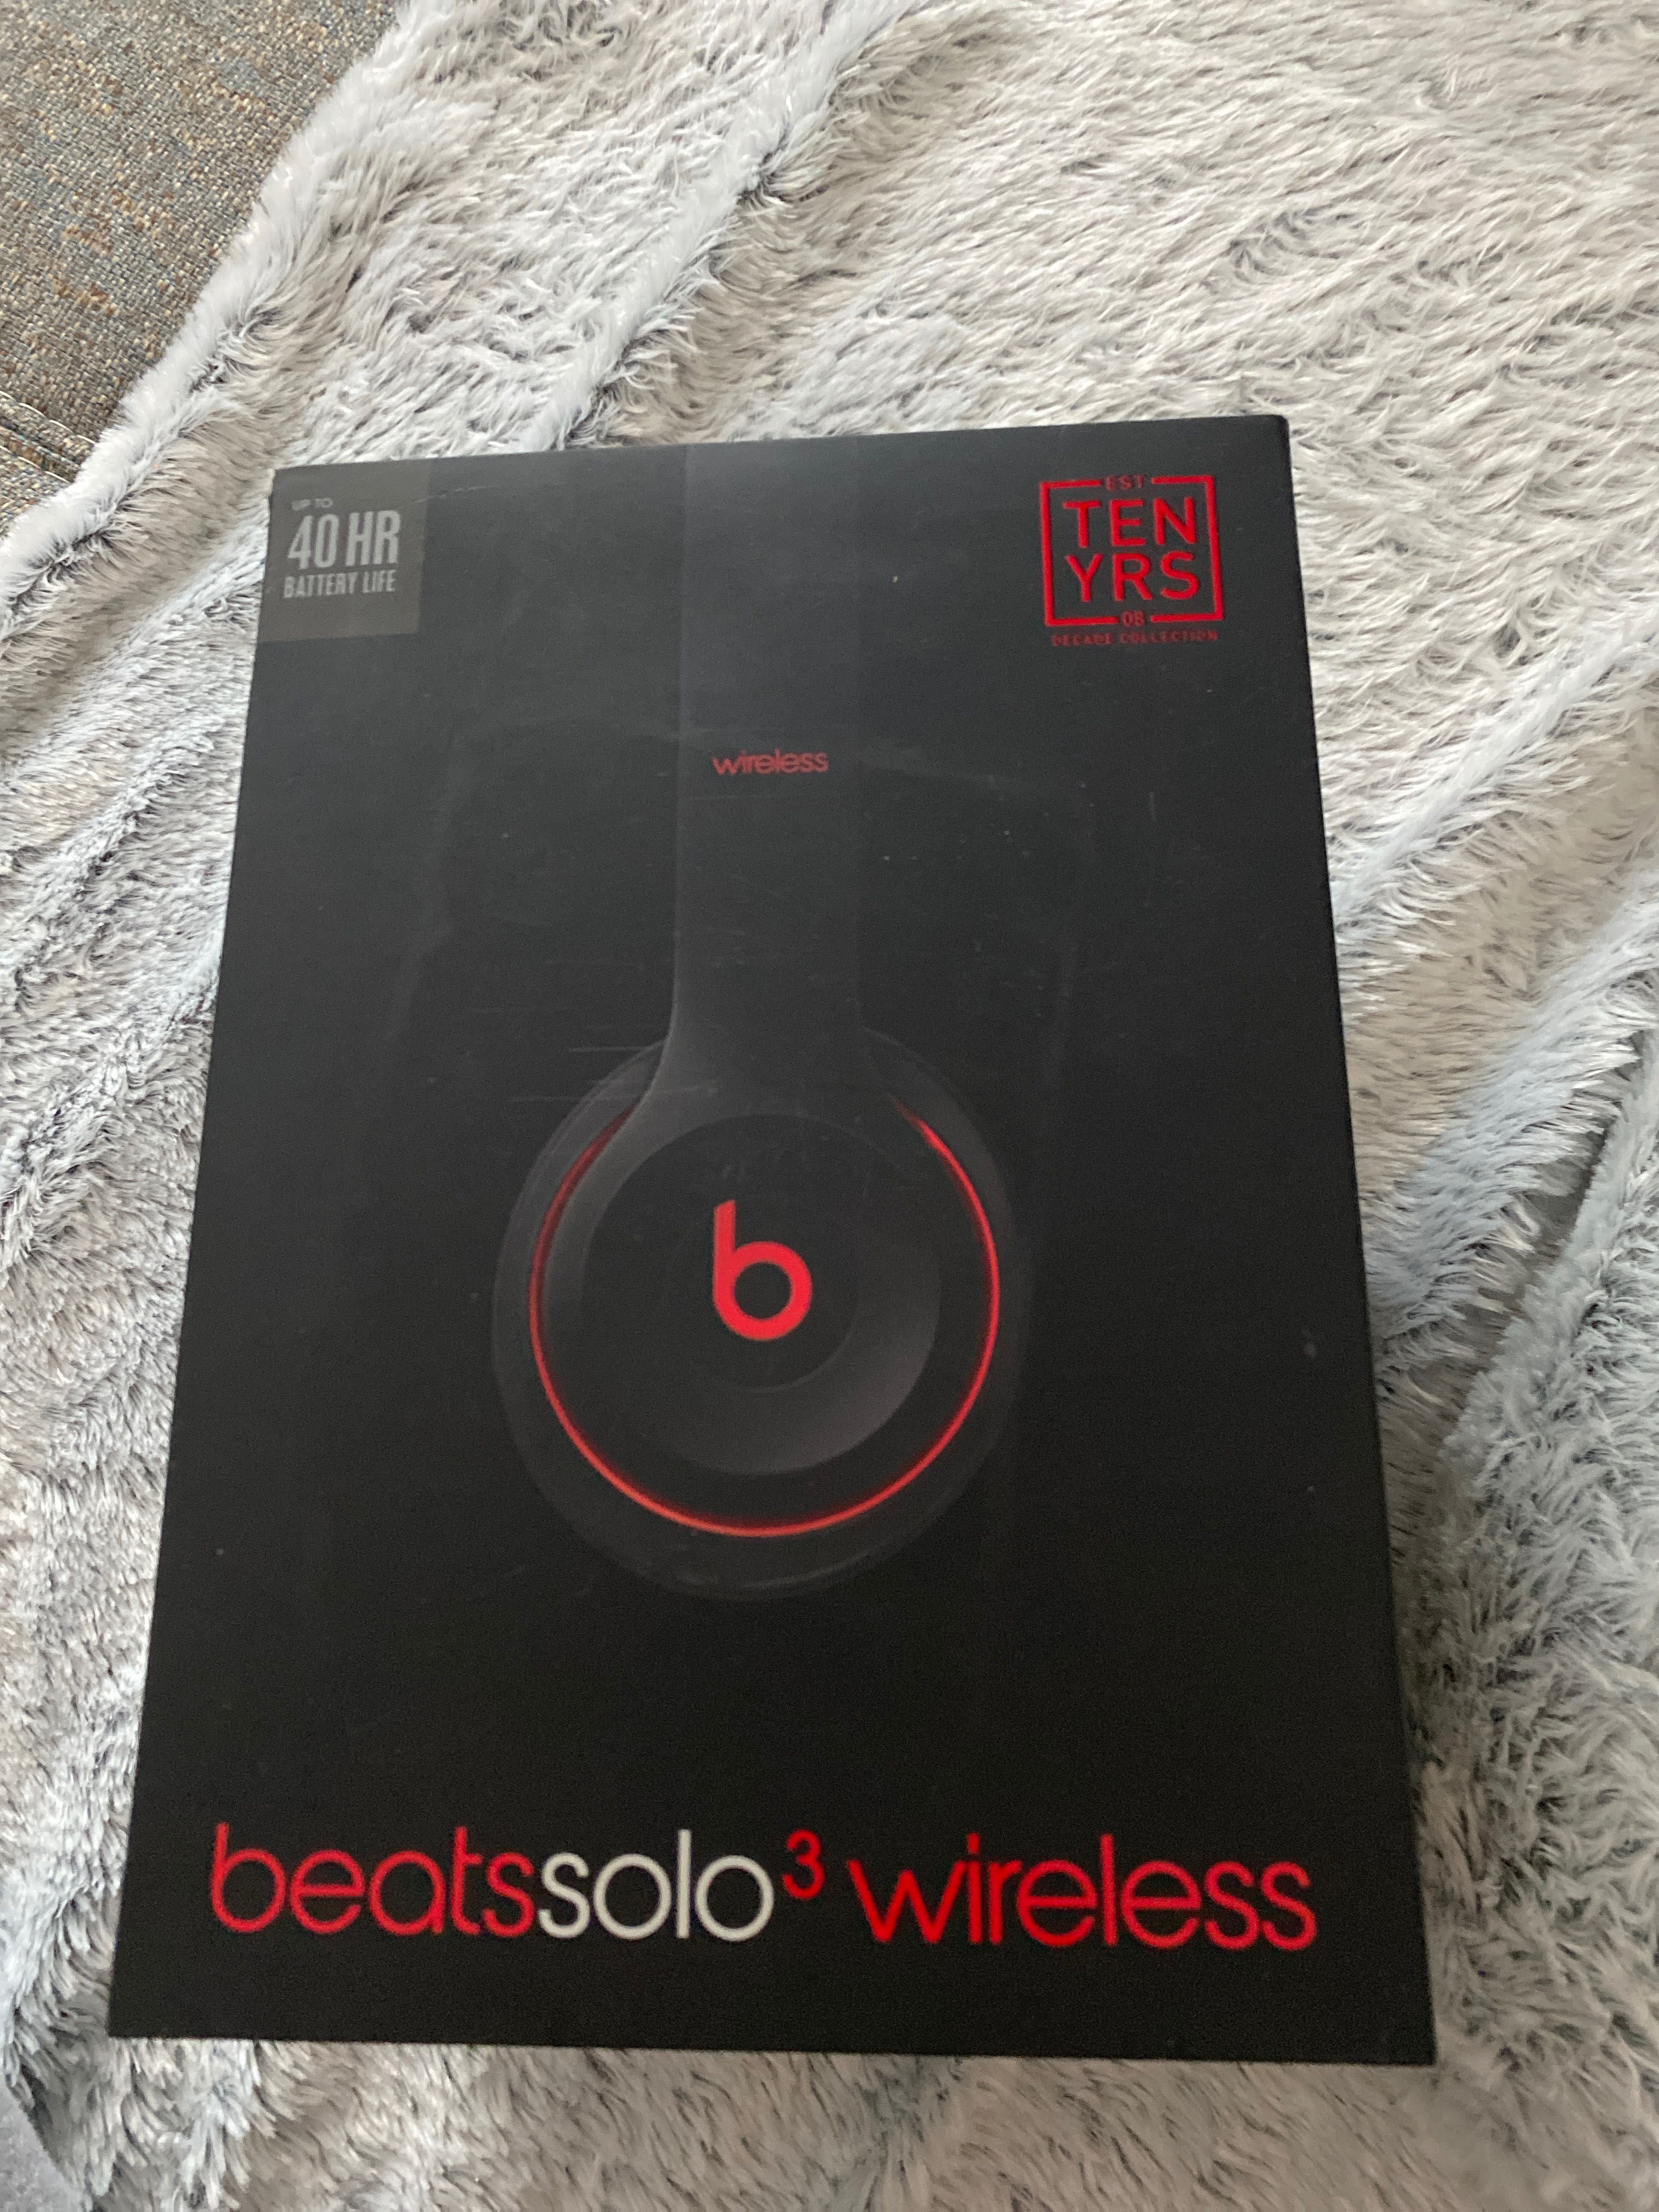 beatssolo3 wireless 2019